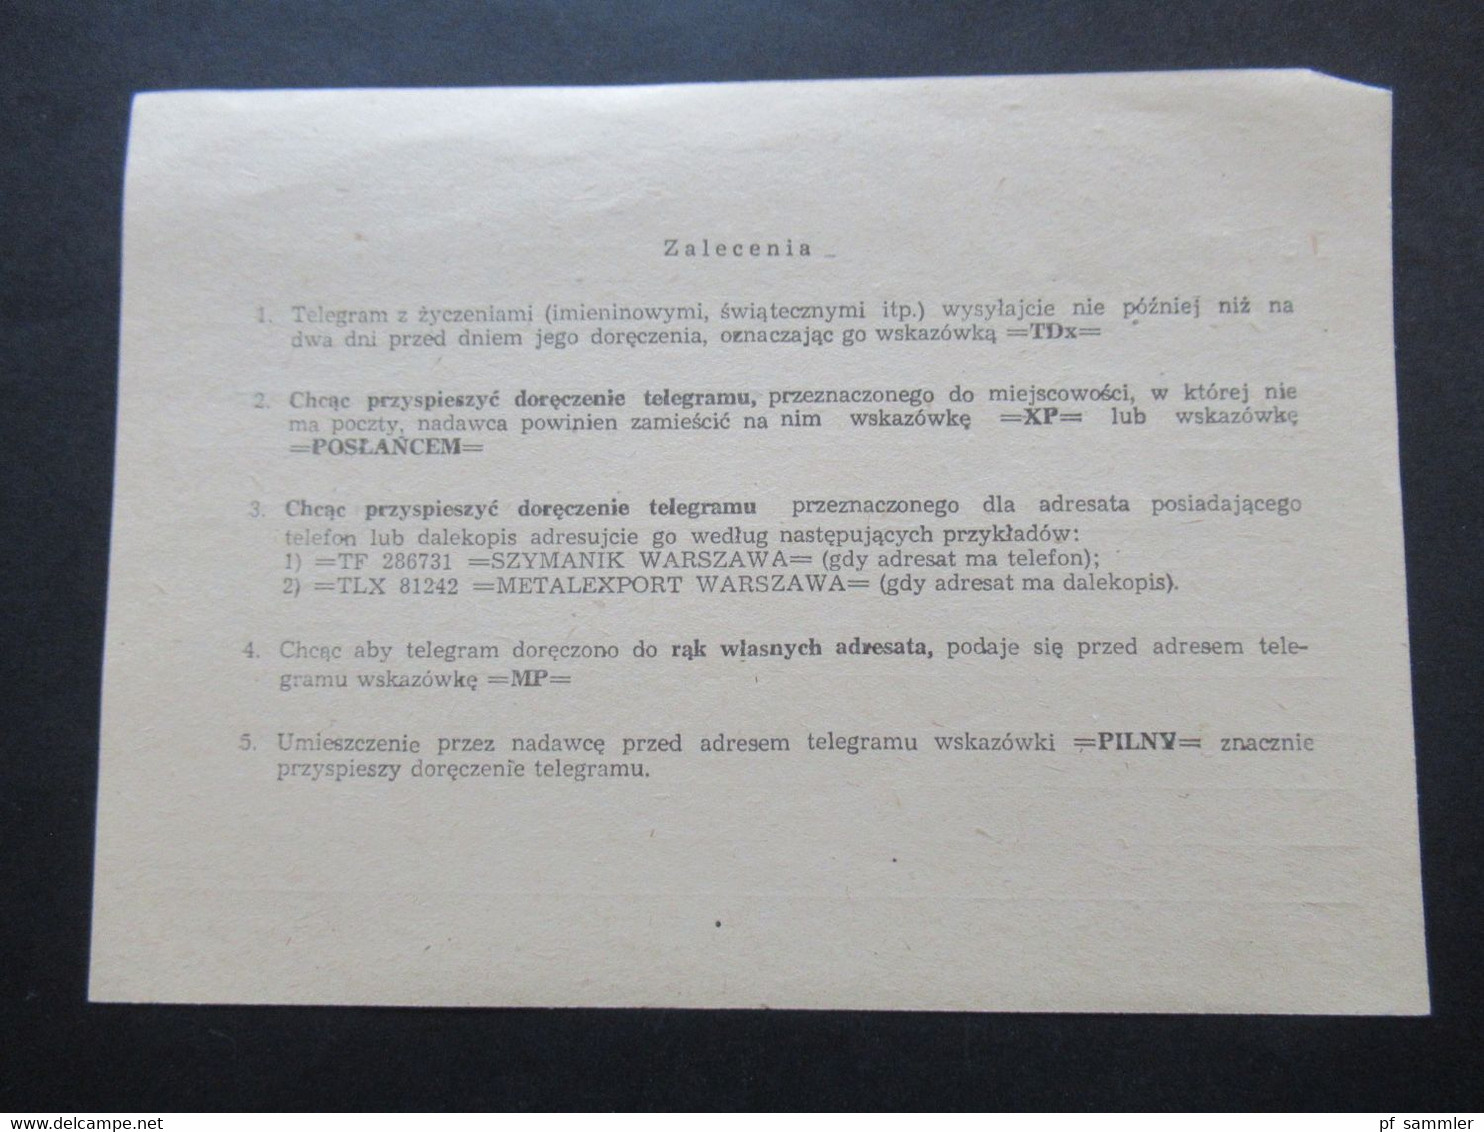 Polen 1979 Telegram 3 Vordrucke Nr. 39, 40 und 41 Przyjeto / Odtelegrafowano / Odwrocic. Ungebraucht